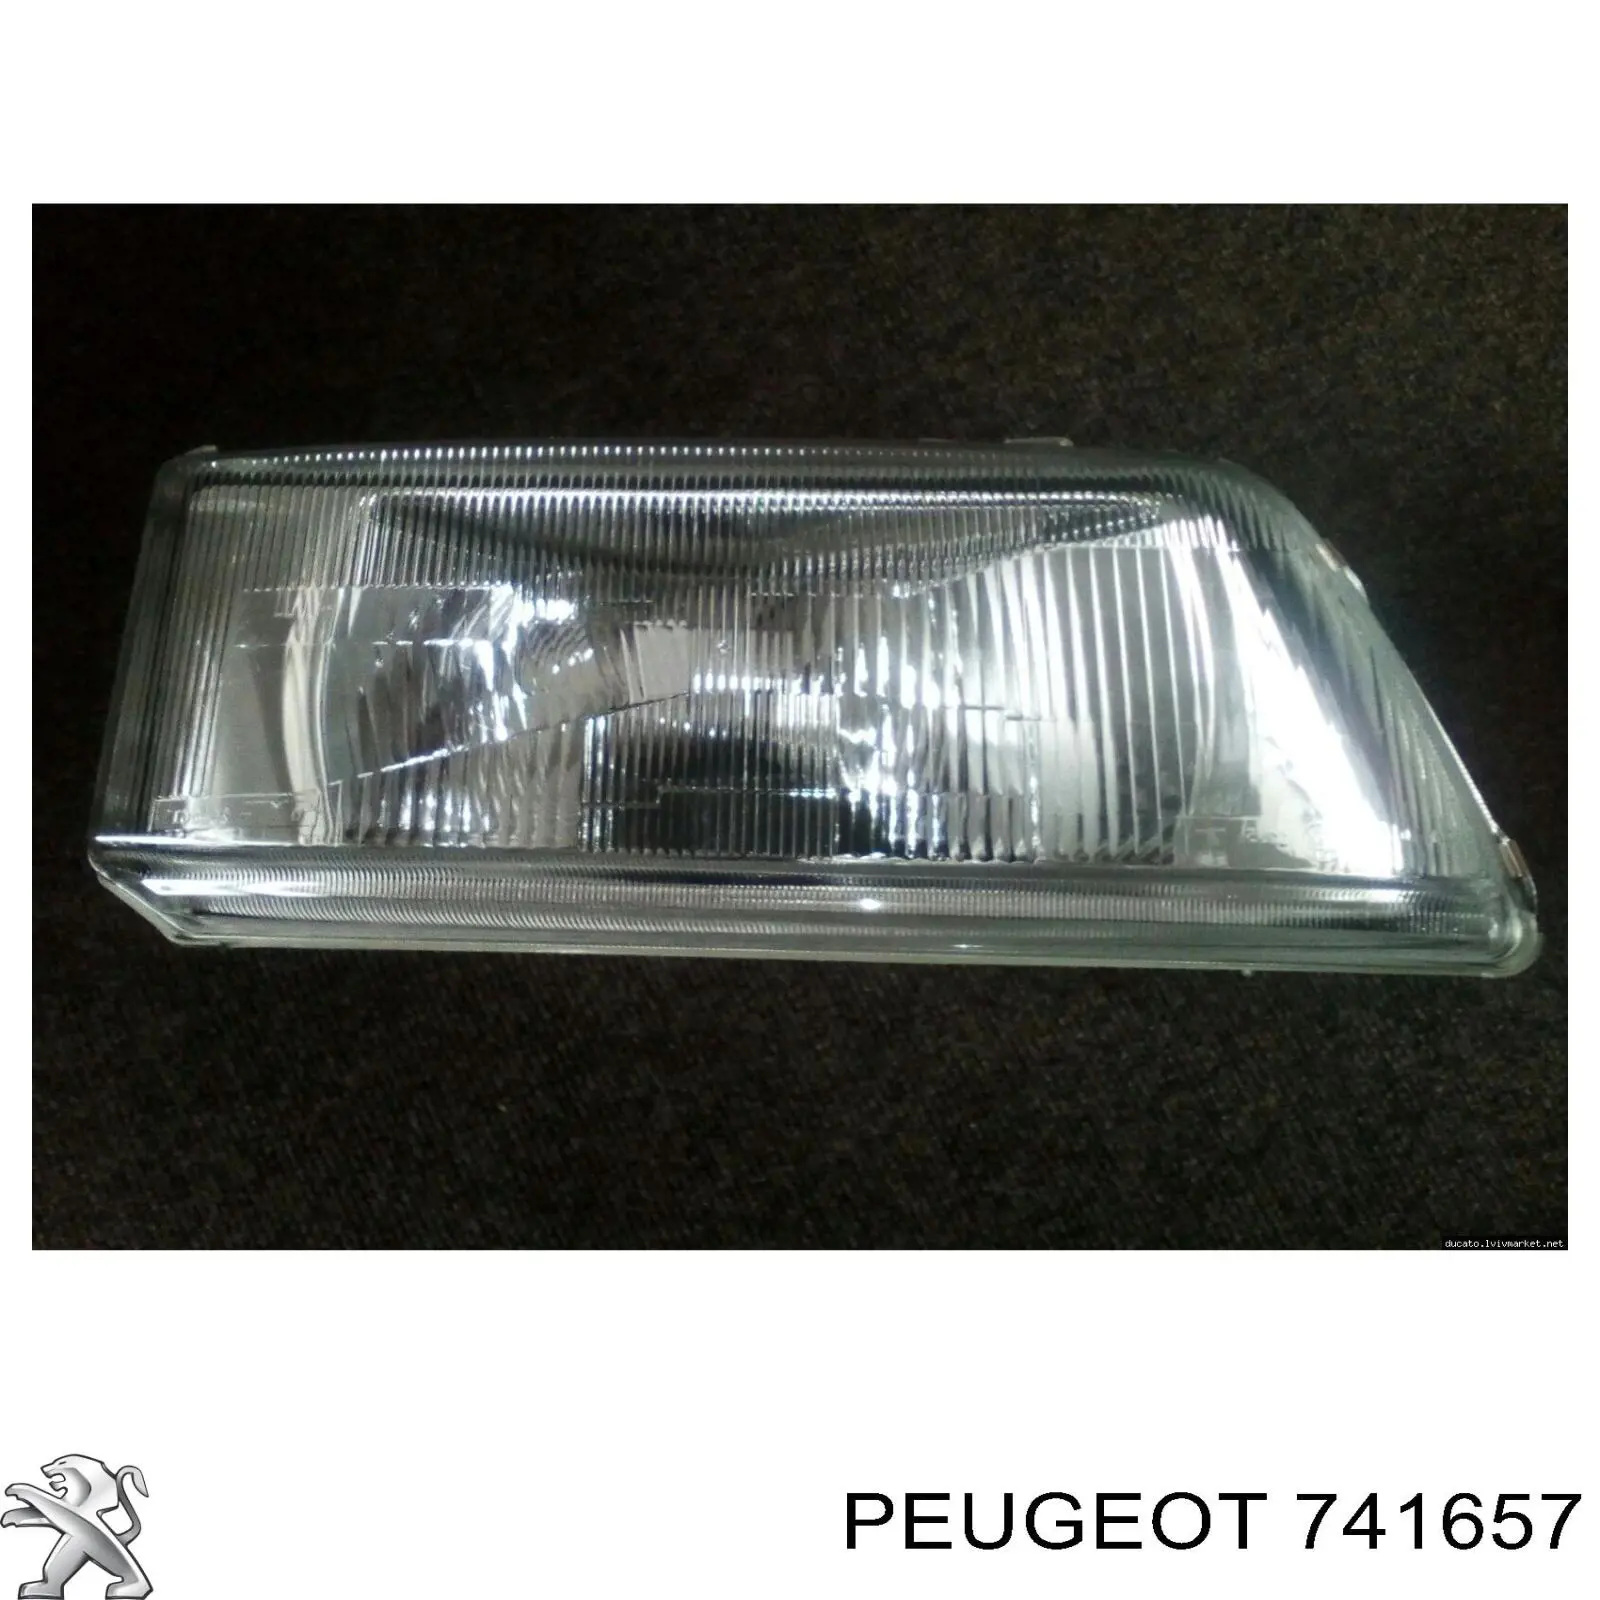 741657 Peugeot/Citroen consola do pára-choque dianteiro